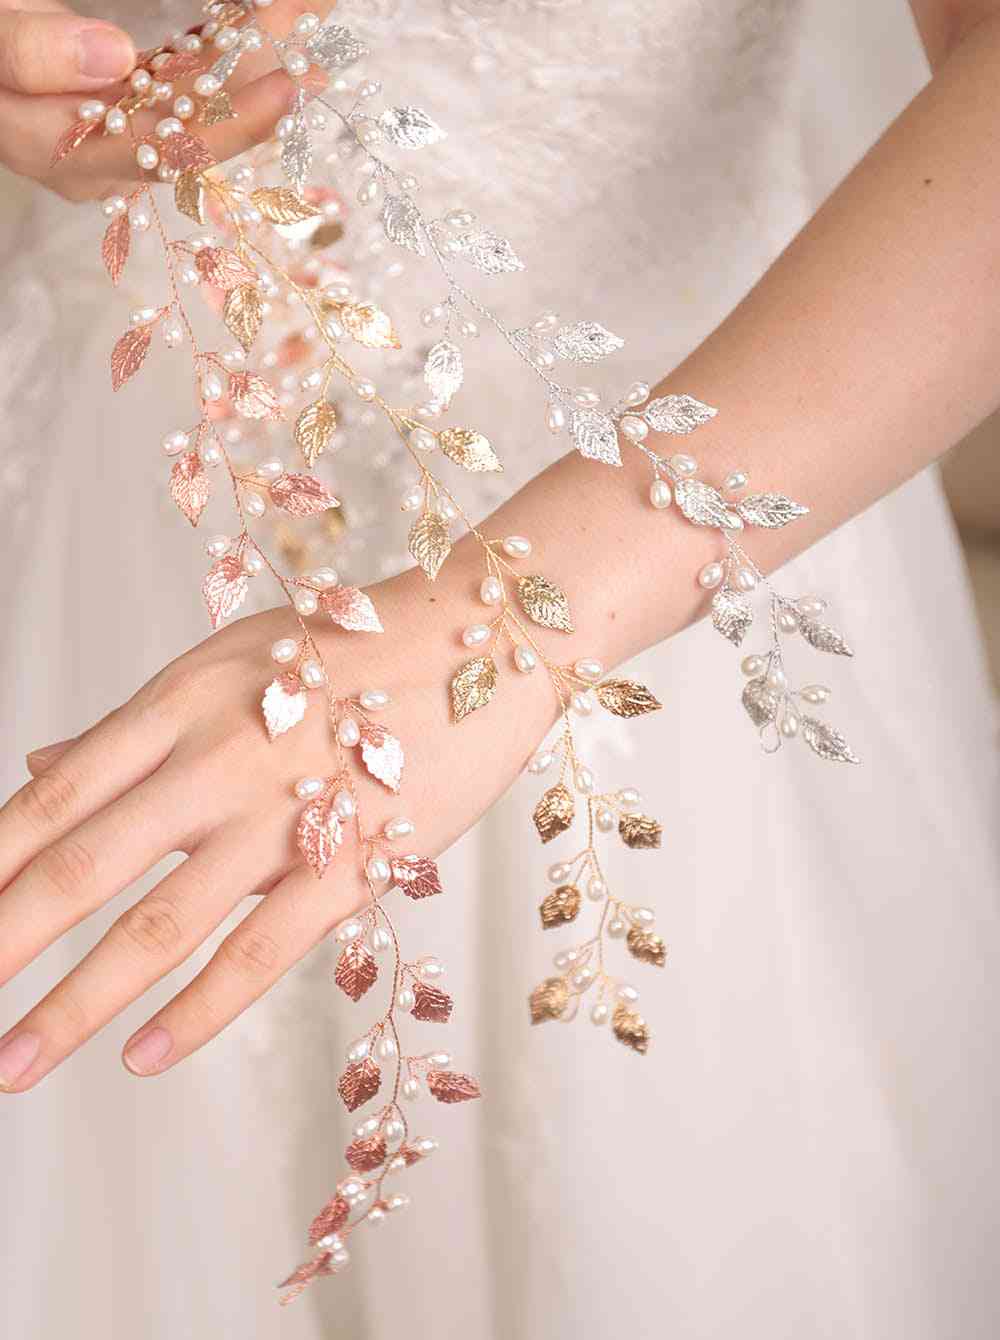 Svatební svatba, čelenka z listových perel, vlasová réva - vlasové doplňky